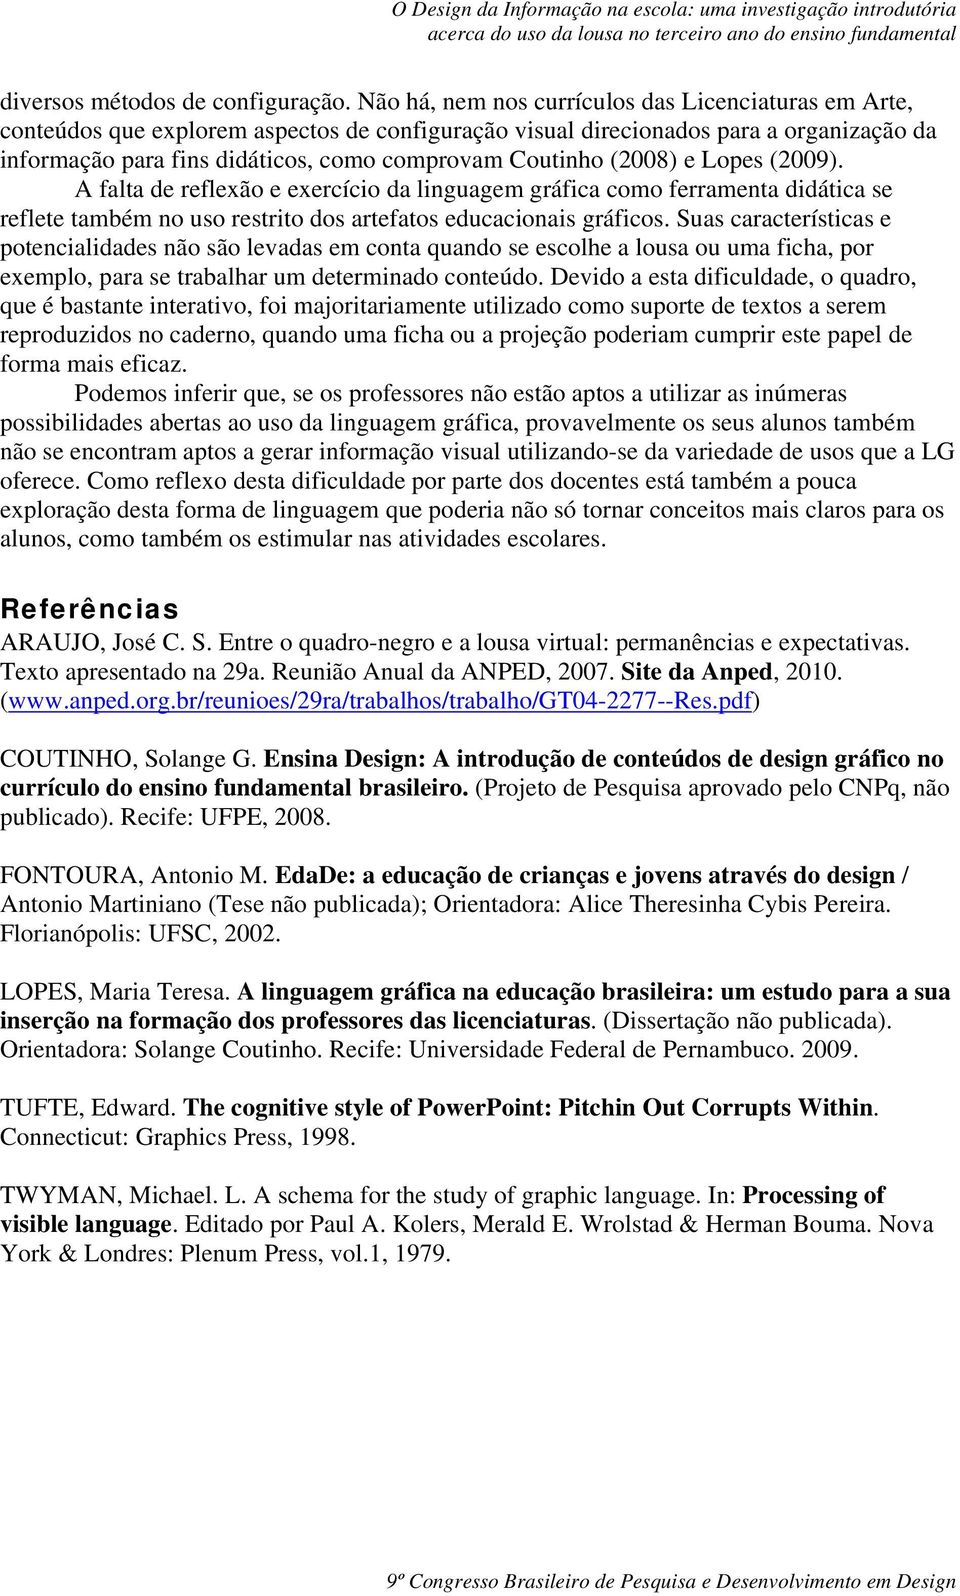 (2008) e Lopes (2009). A falta de reflexão e exercício da linguagem gráfica como ferramenta didática se reflete também no uso restrito dos artefatos educacionais gráficos.